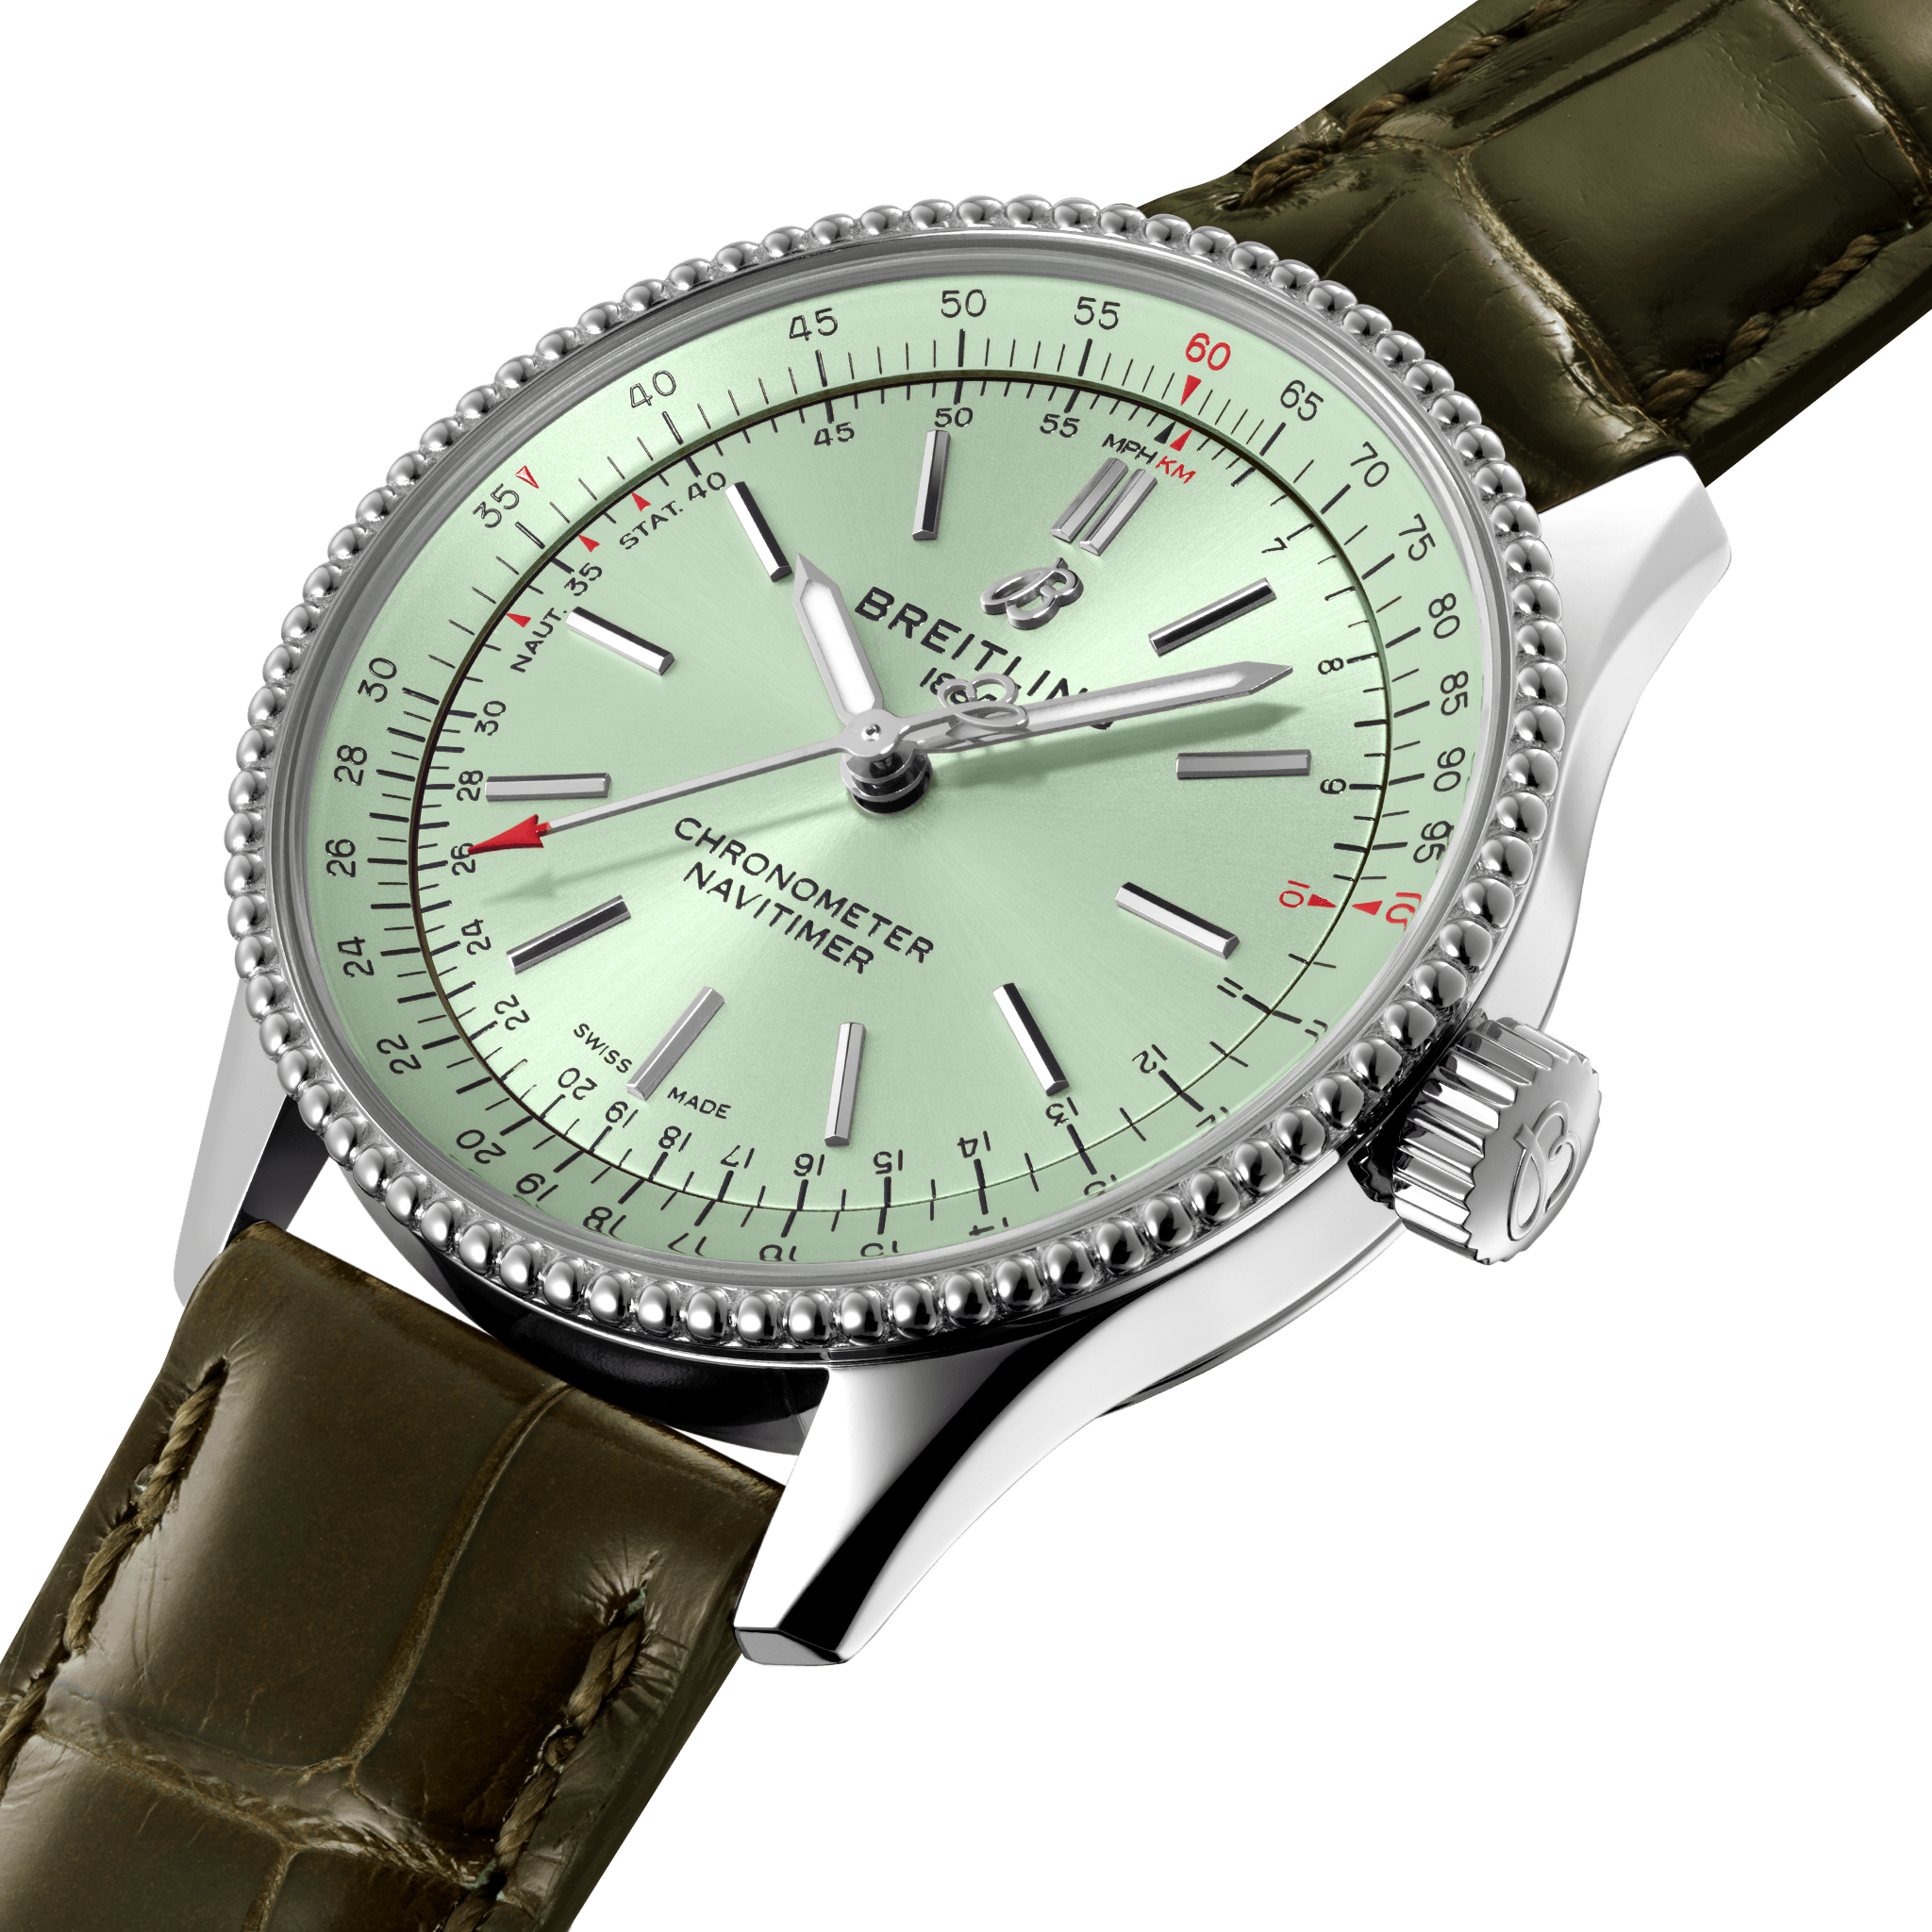 A17395361L1P2 NAVITIMER AUTOMATIC 35 - Kamal Watch Company